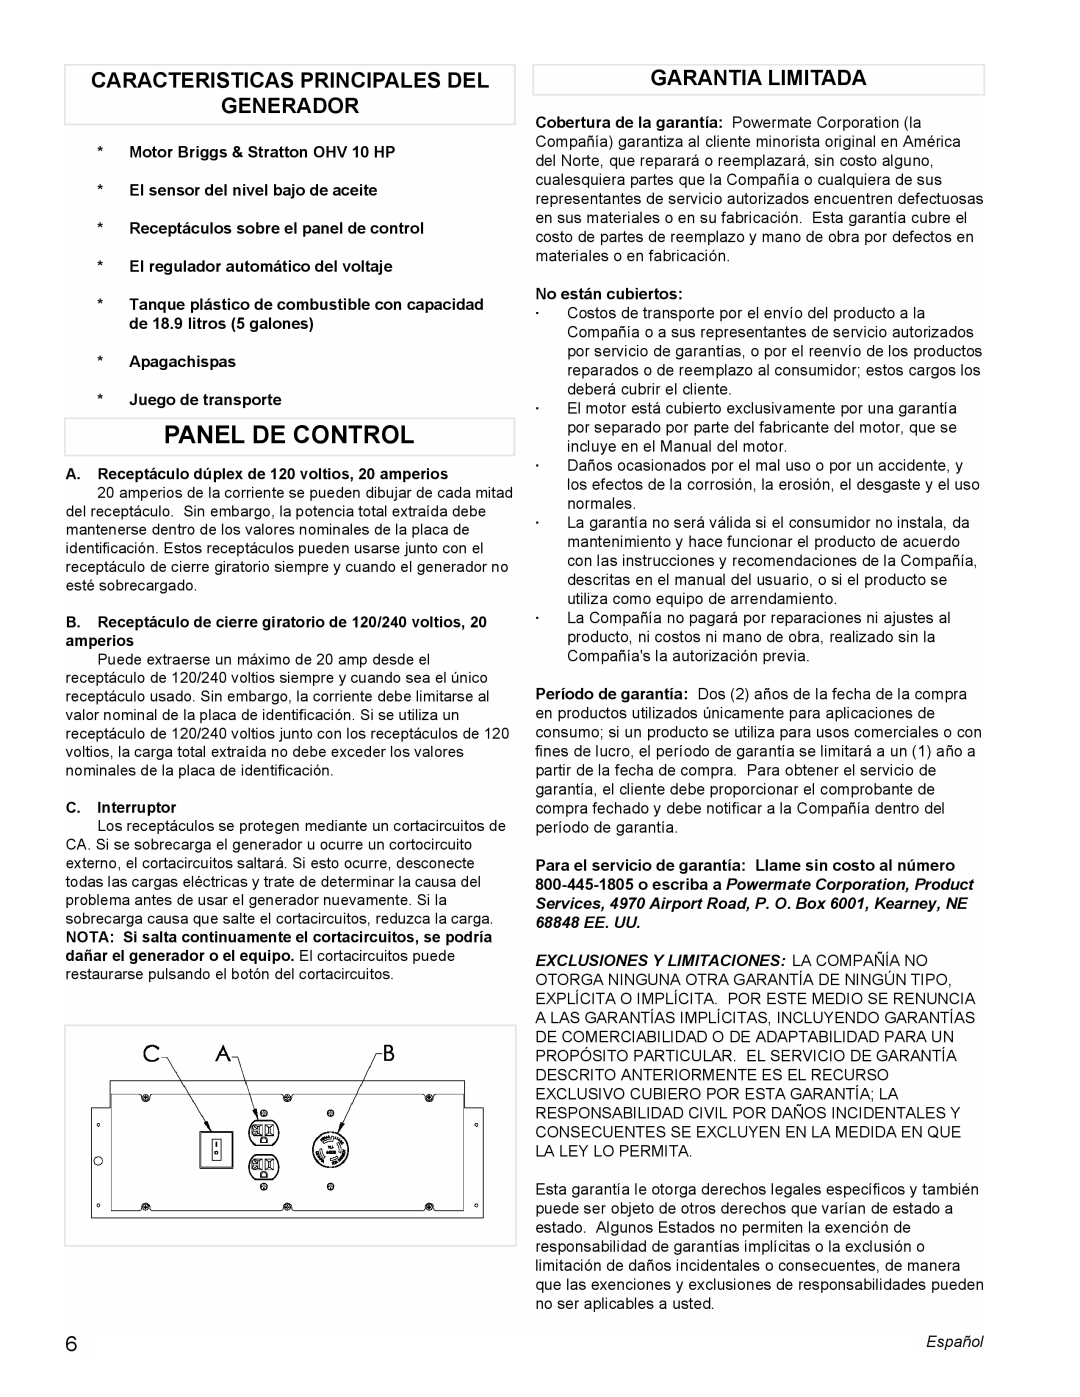 Powermate PC0545006 manual Panel De Control, Caracteristicas Principales Del Generador, Garantia Limitada 